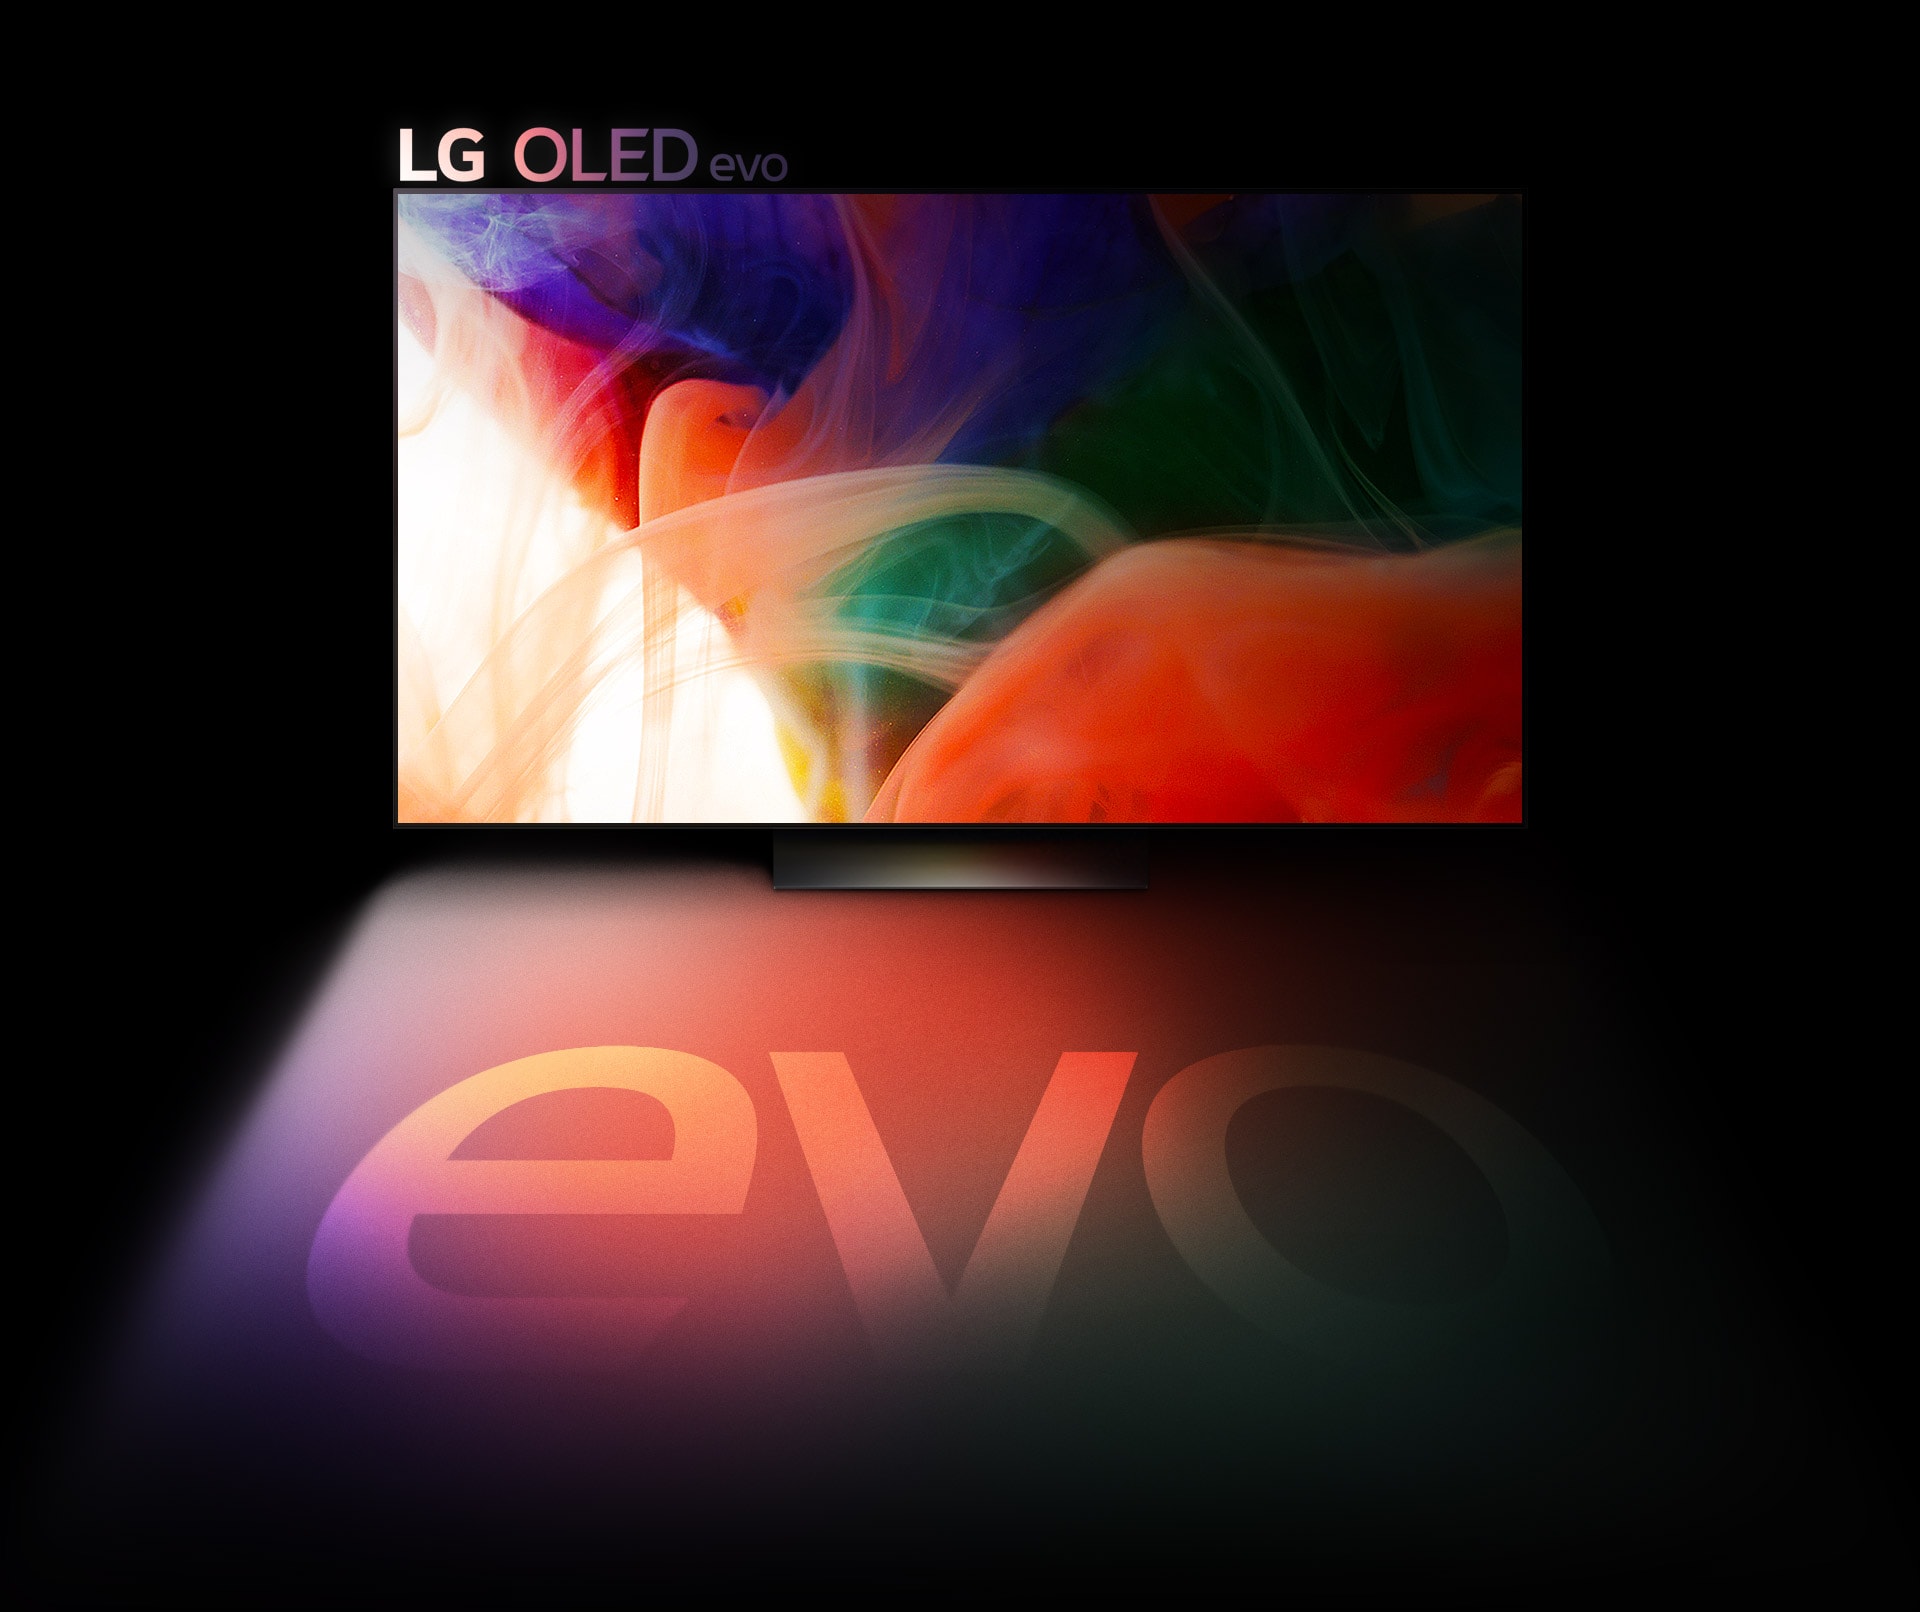 يتم عرض صورة مجردة ملونة على تلفزيون OLED evo من إل جي 